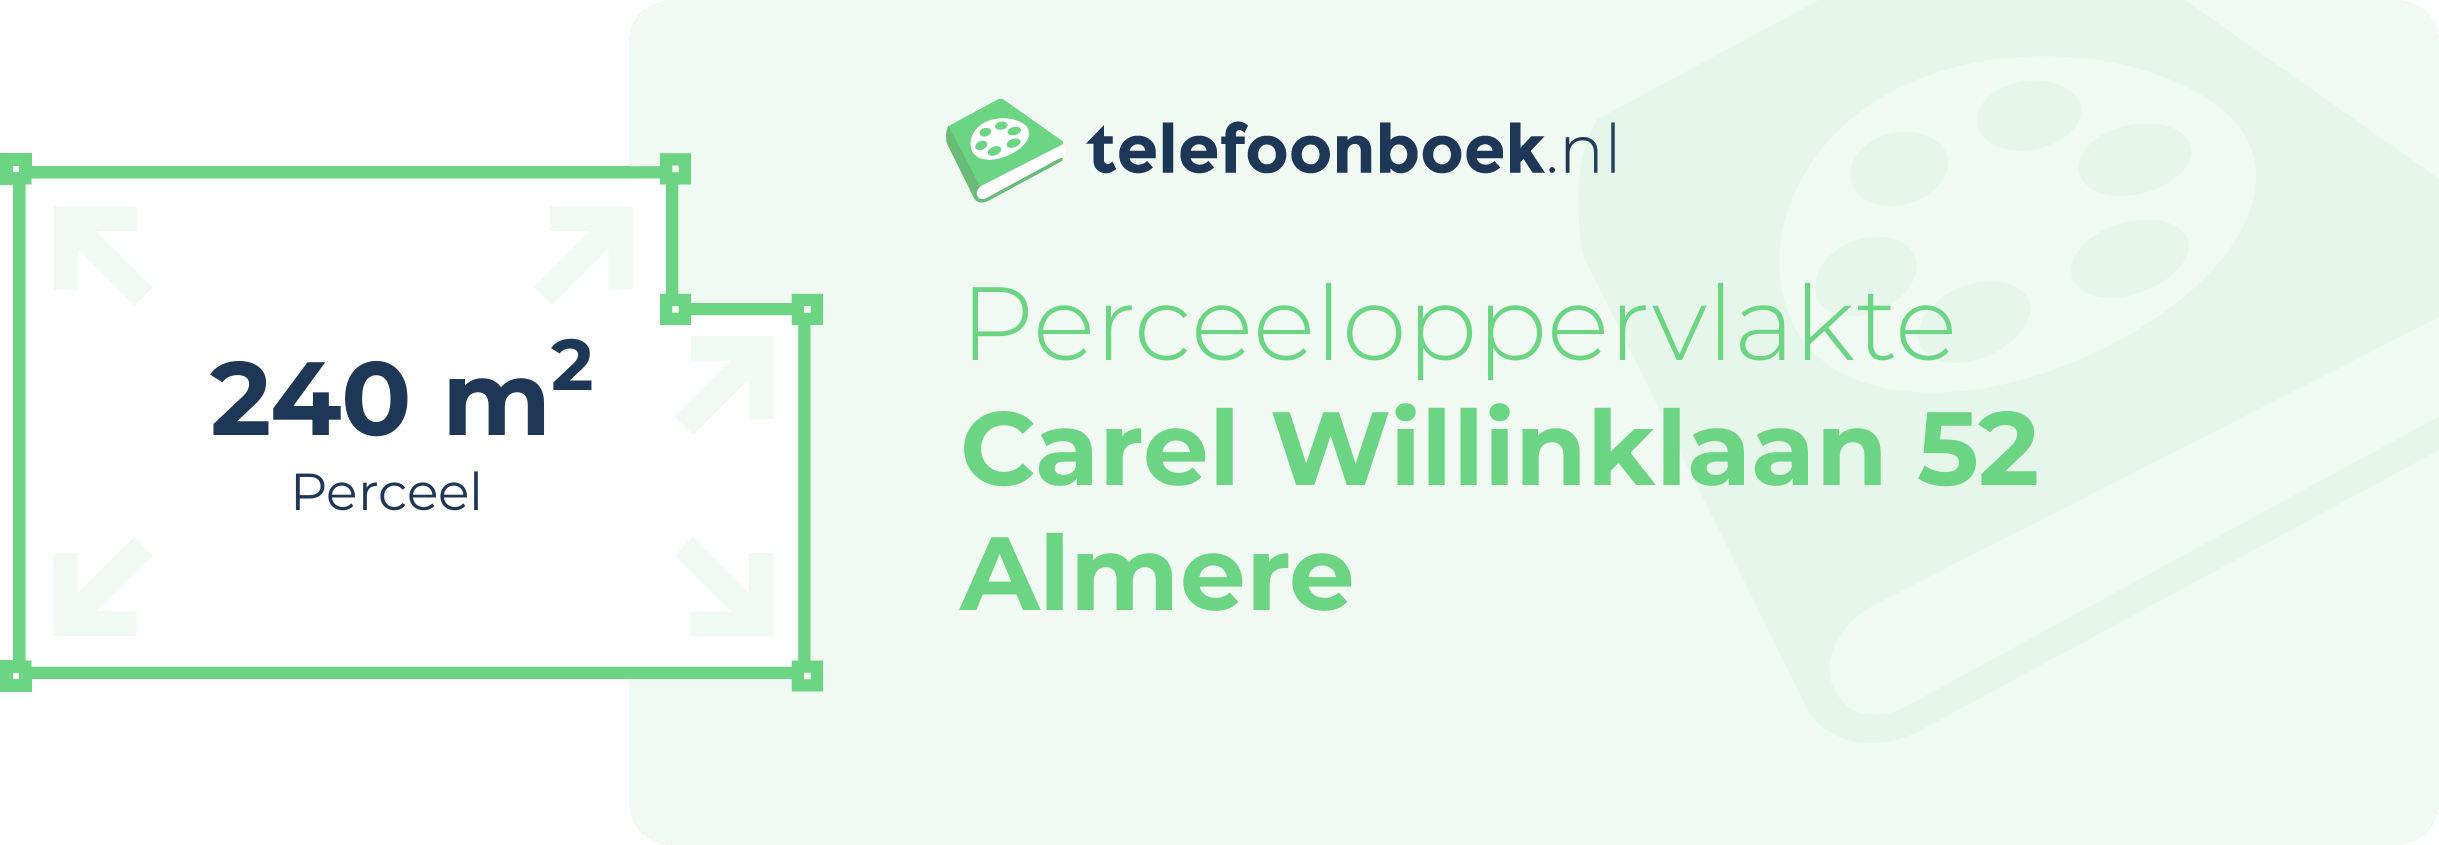 Perceeloppervlakte Carel Willinklaan 52 Almere